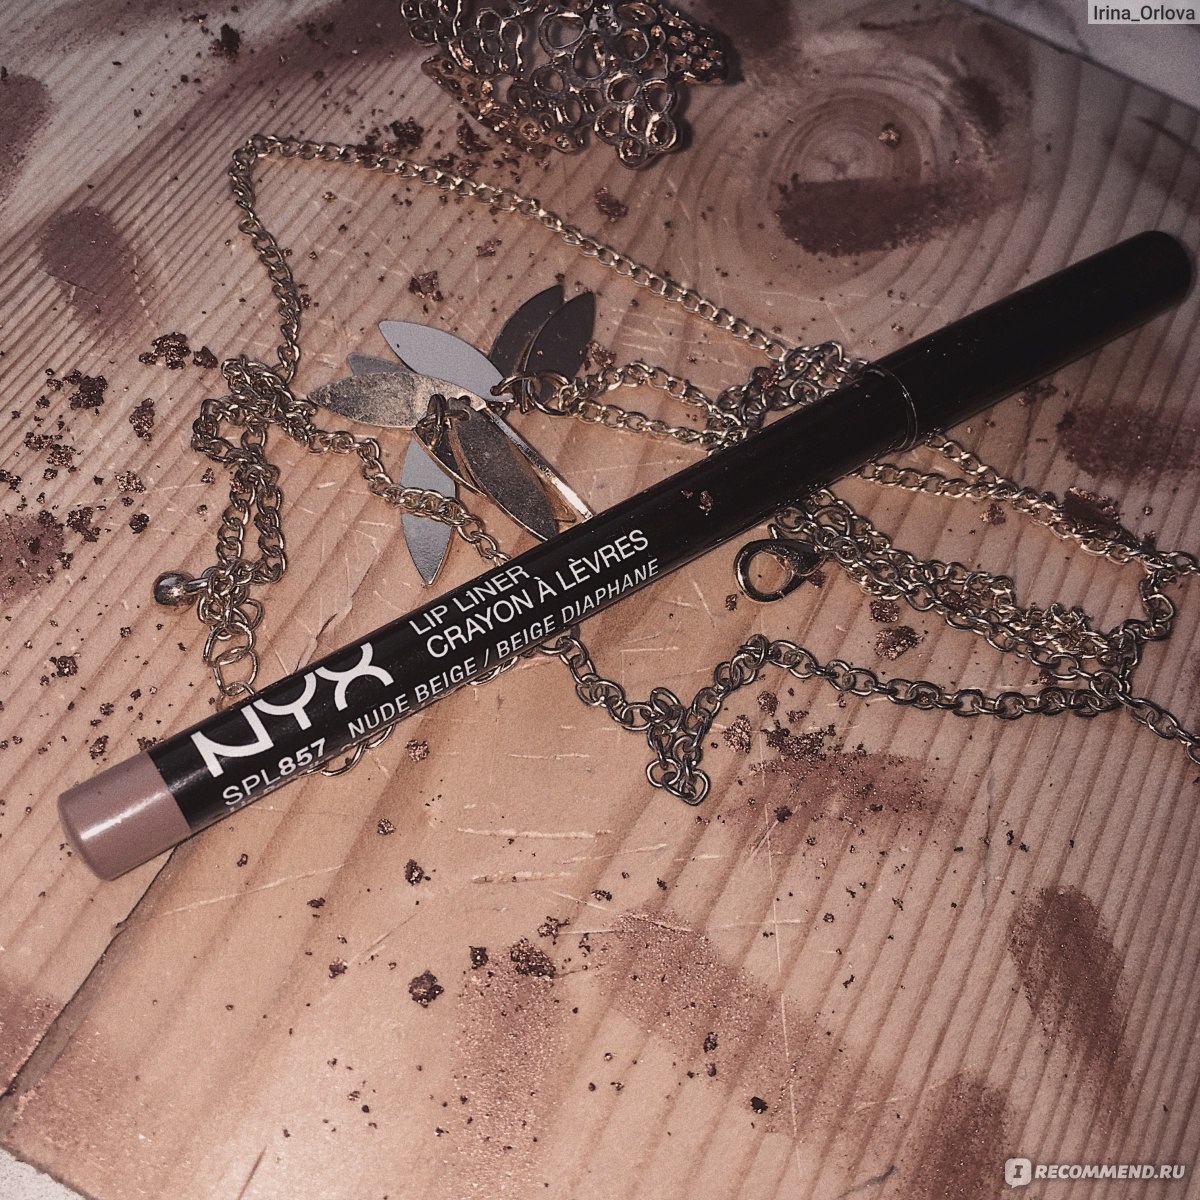 Карандаш для губ NYX Professional Makeup Slim lip pencil - «Такая сильная  любовь и ненависть в одном флаконе... оттенок 857 Nude Beige» | отзывы